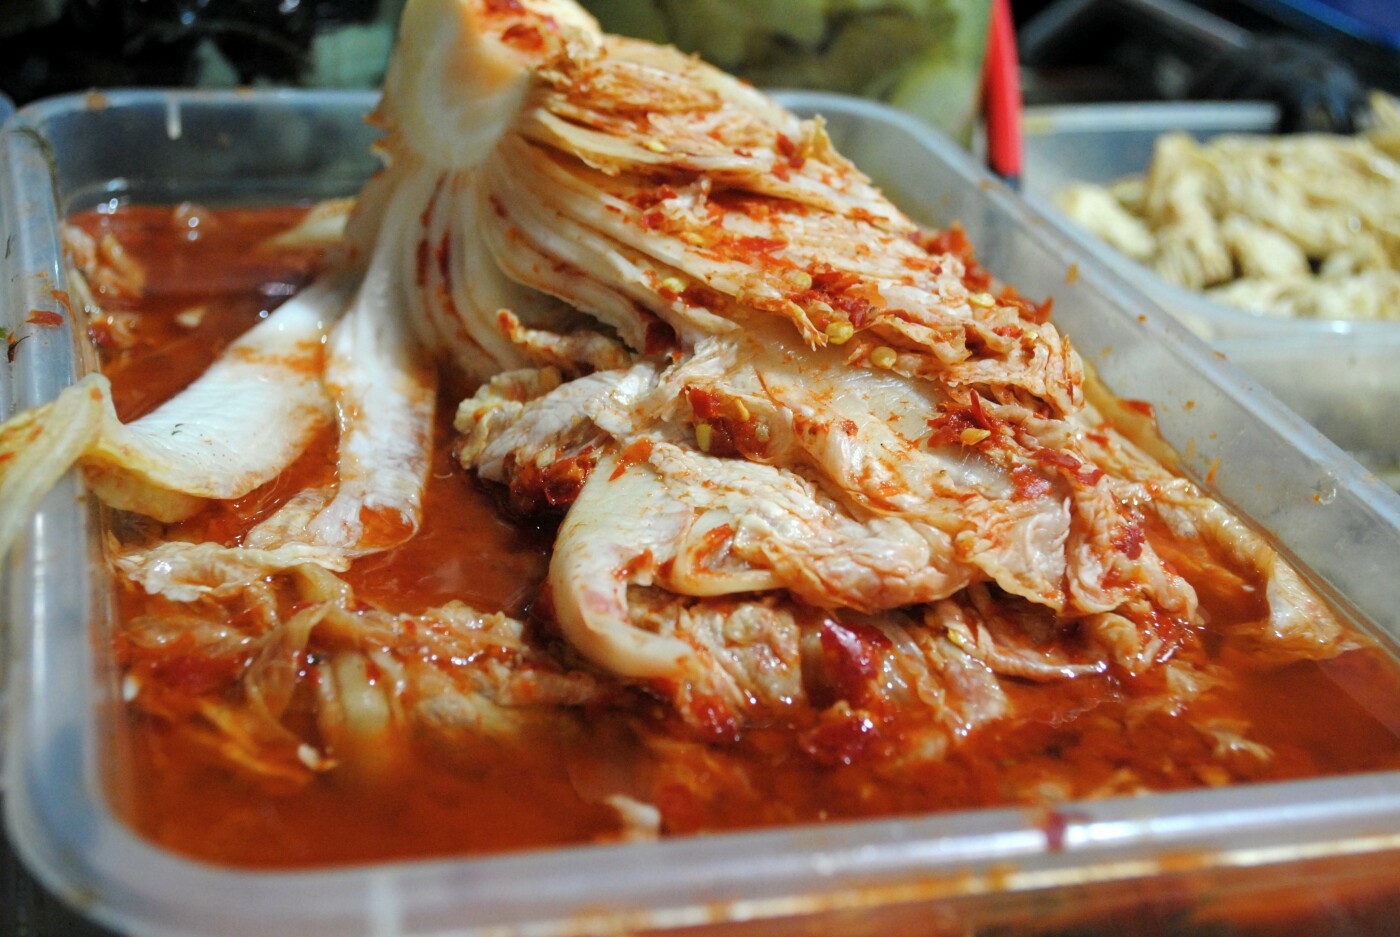 Кимчи – капуста пак-чой по-корейски